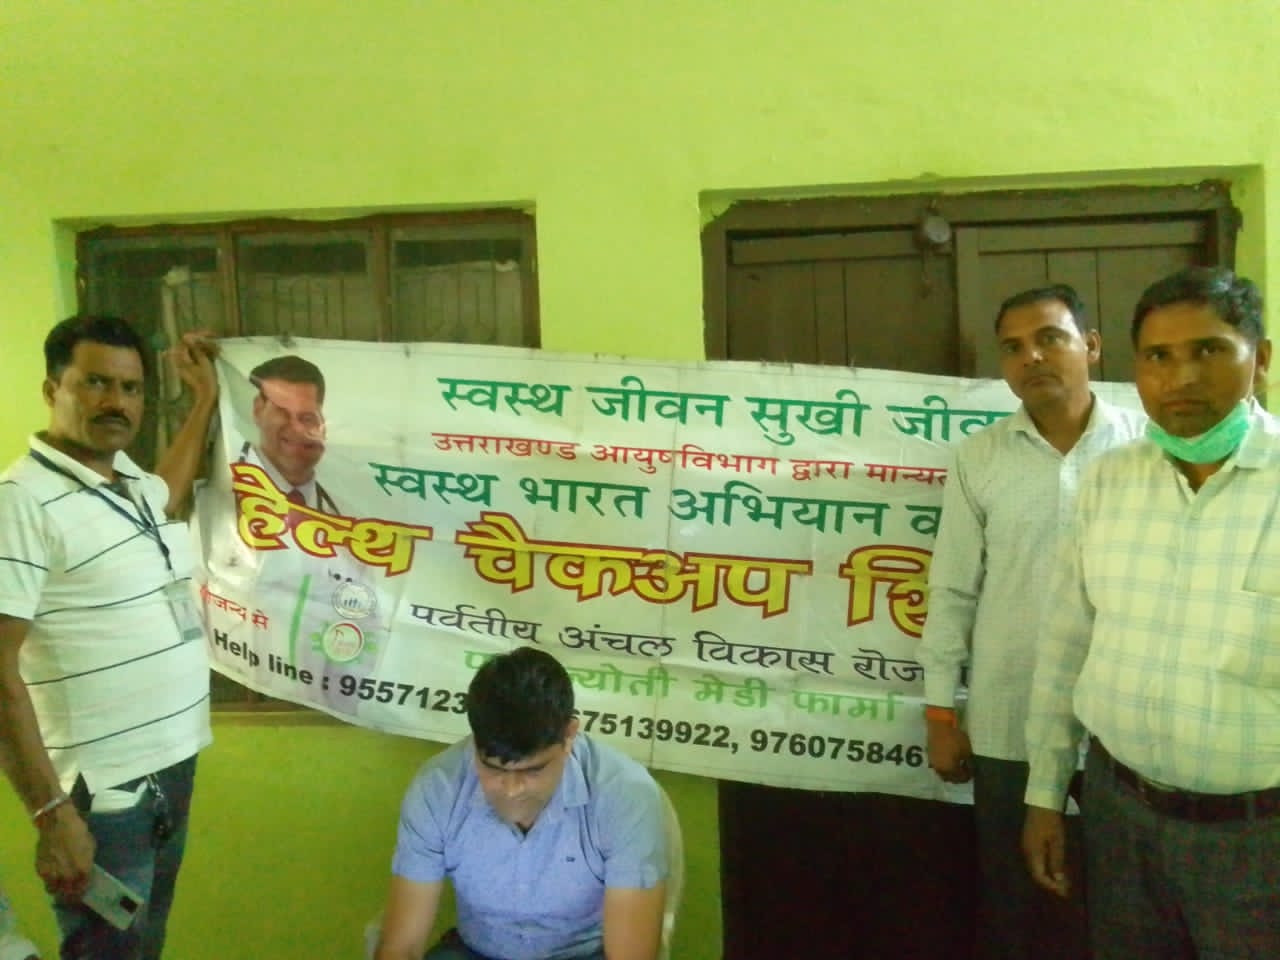 मंगलौर में किया गया आयुर्वेद स्वास्थ्य कैंप का आयोजन